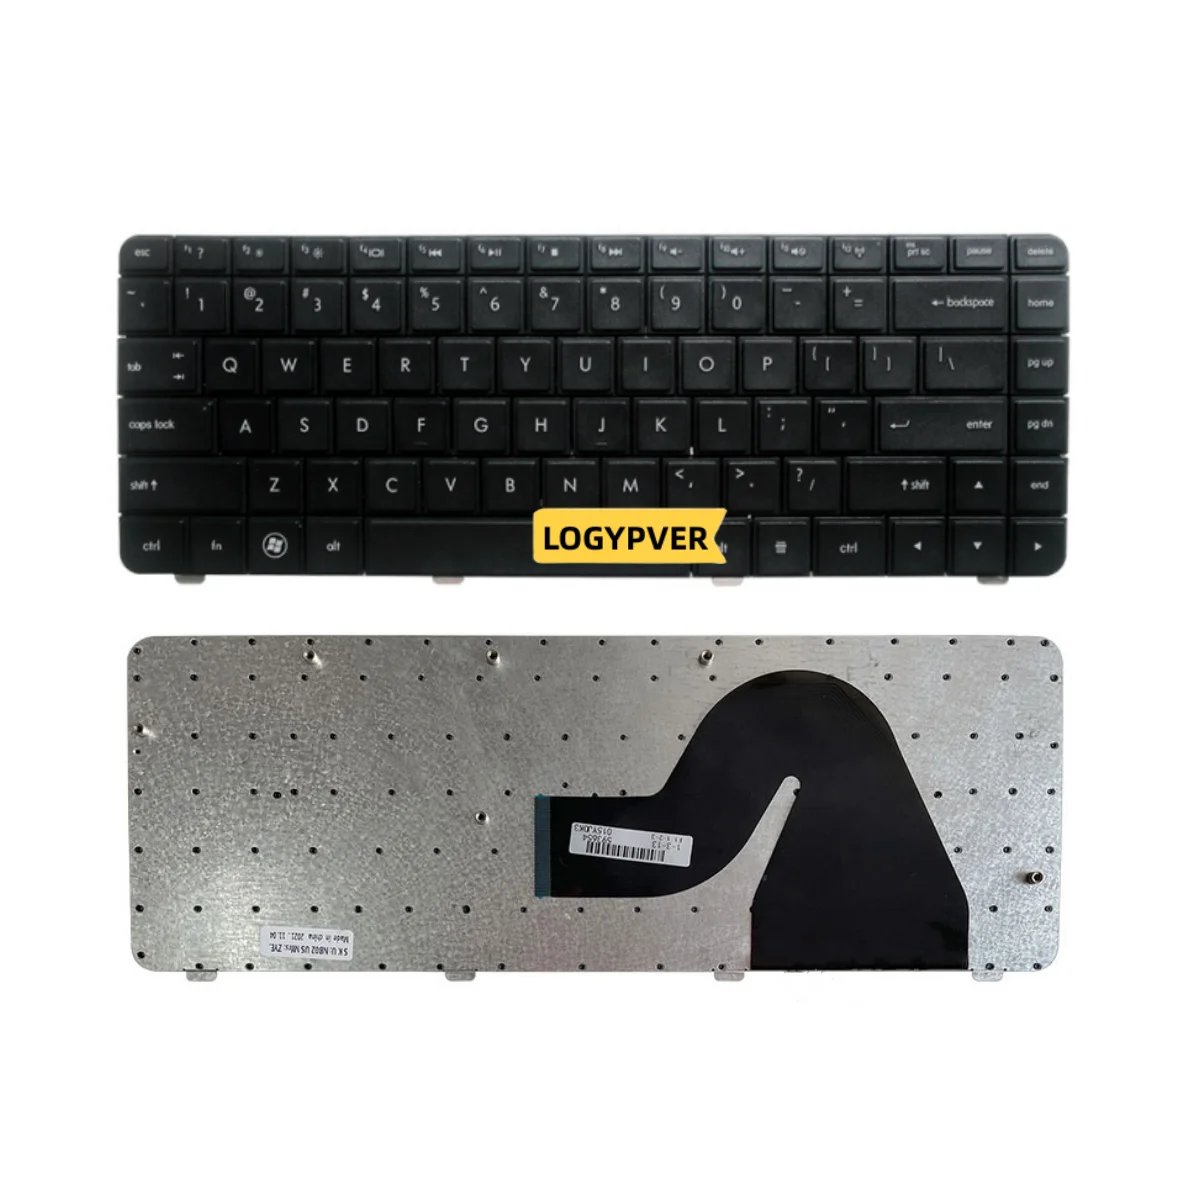 

US English Keyboard FOR HP Compaq Presario CQ42 G42 Series CQ42-151TX CQ42-223AX Black